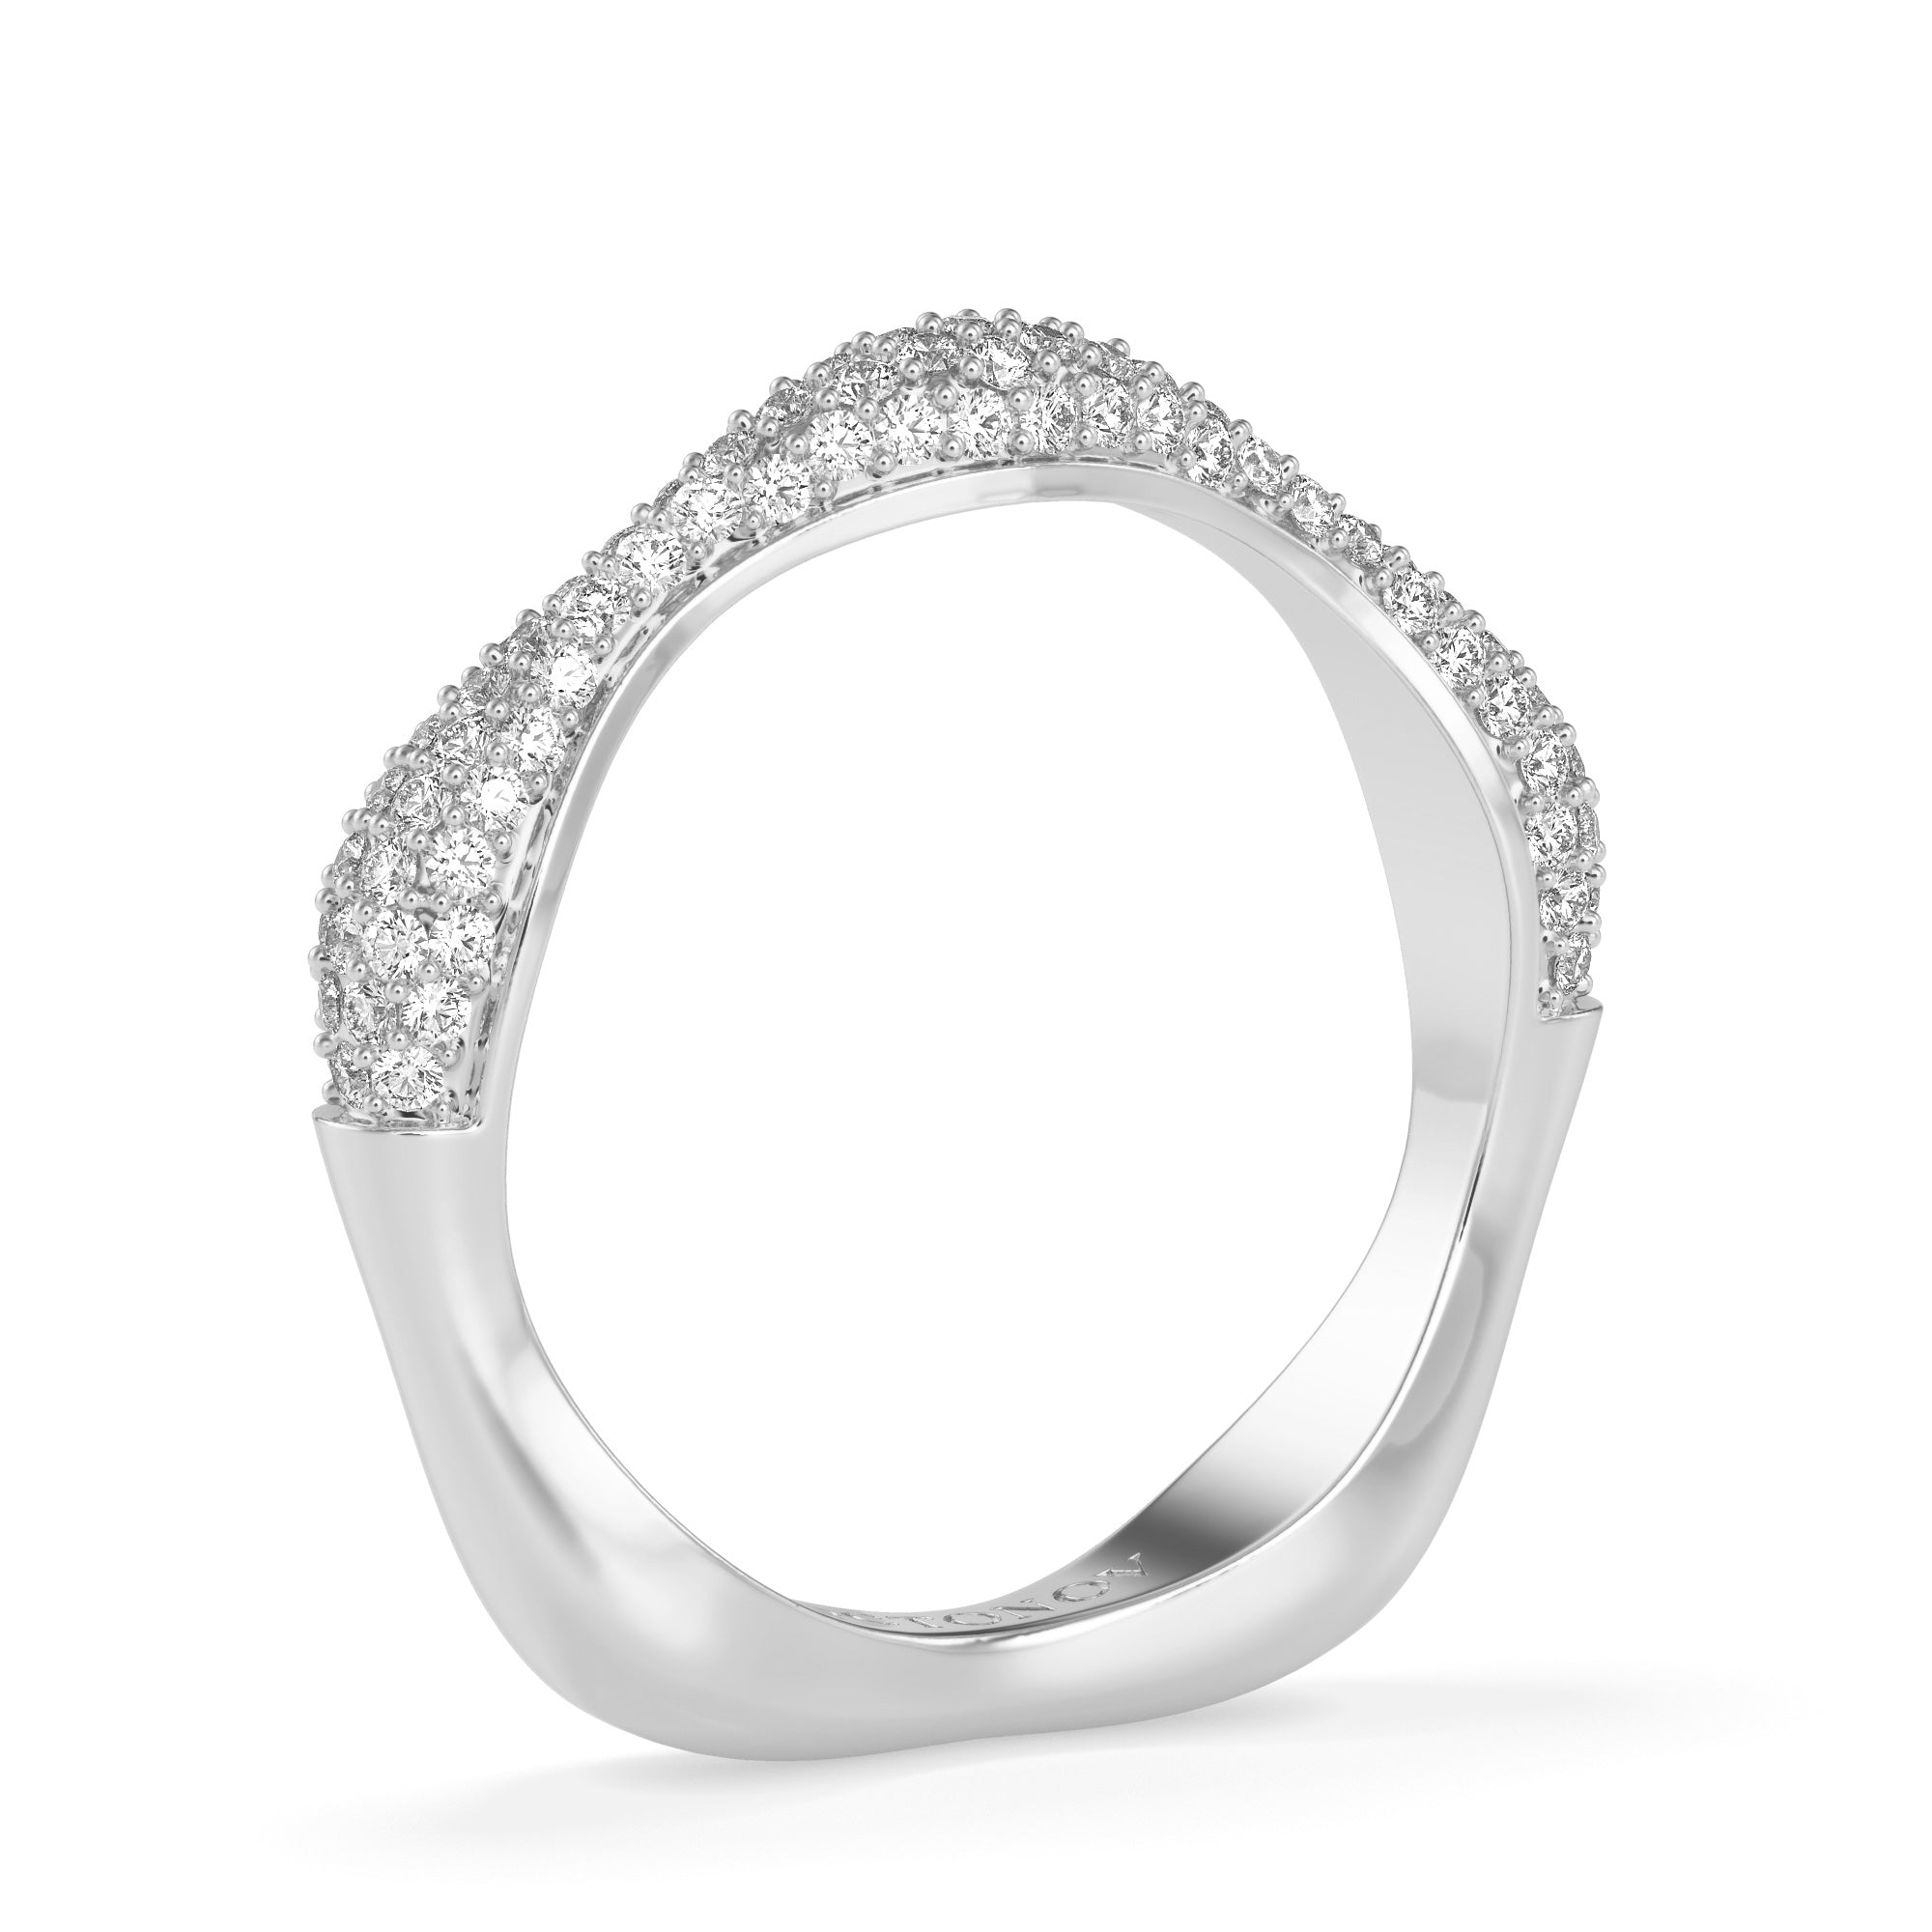 Diamond Swirl Stacker Ring in Silver - Octonov 